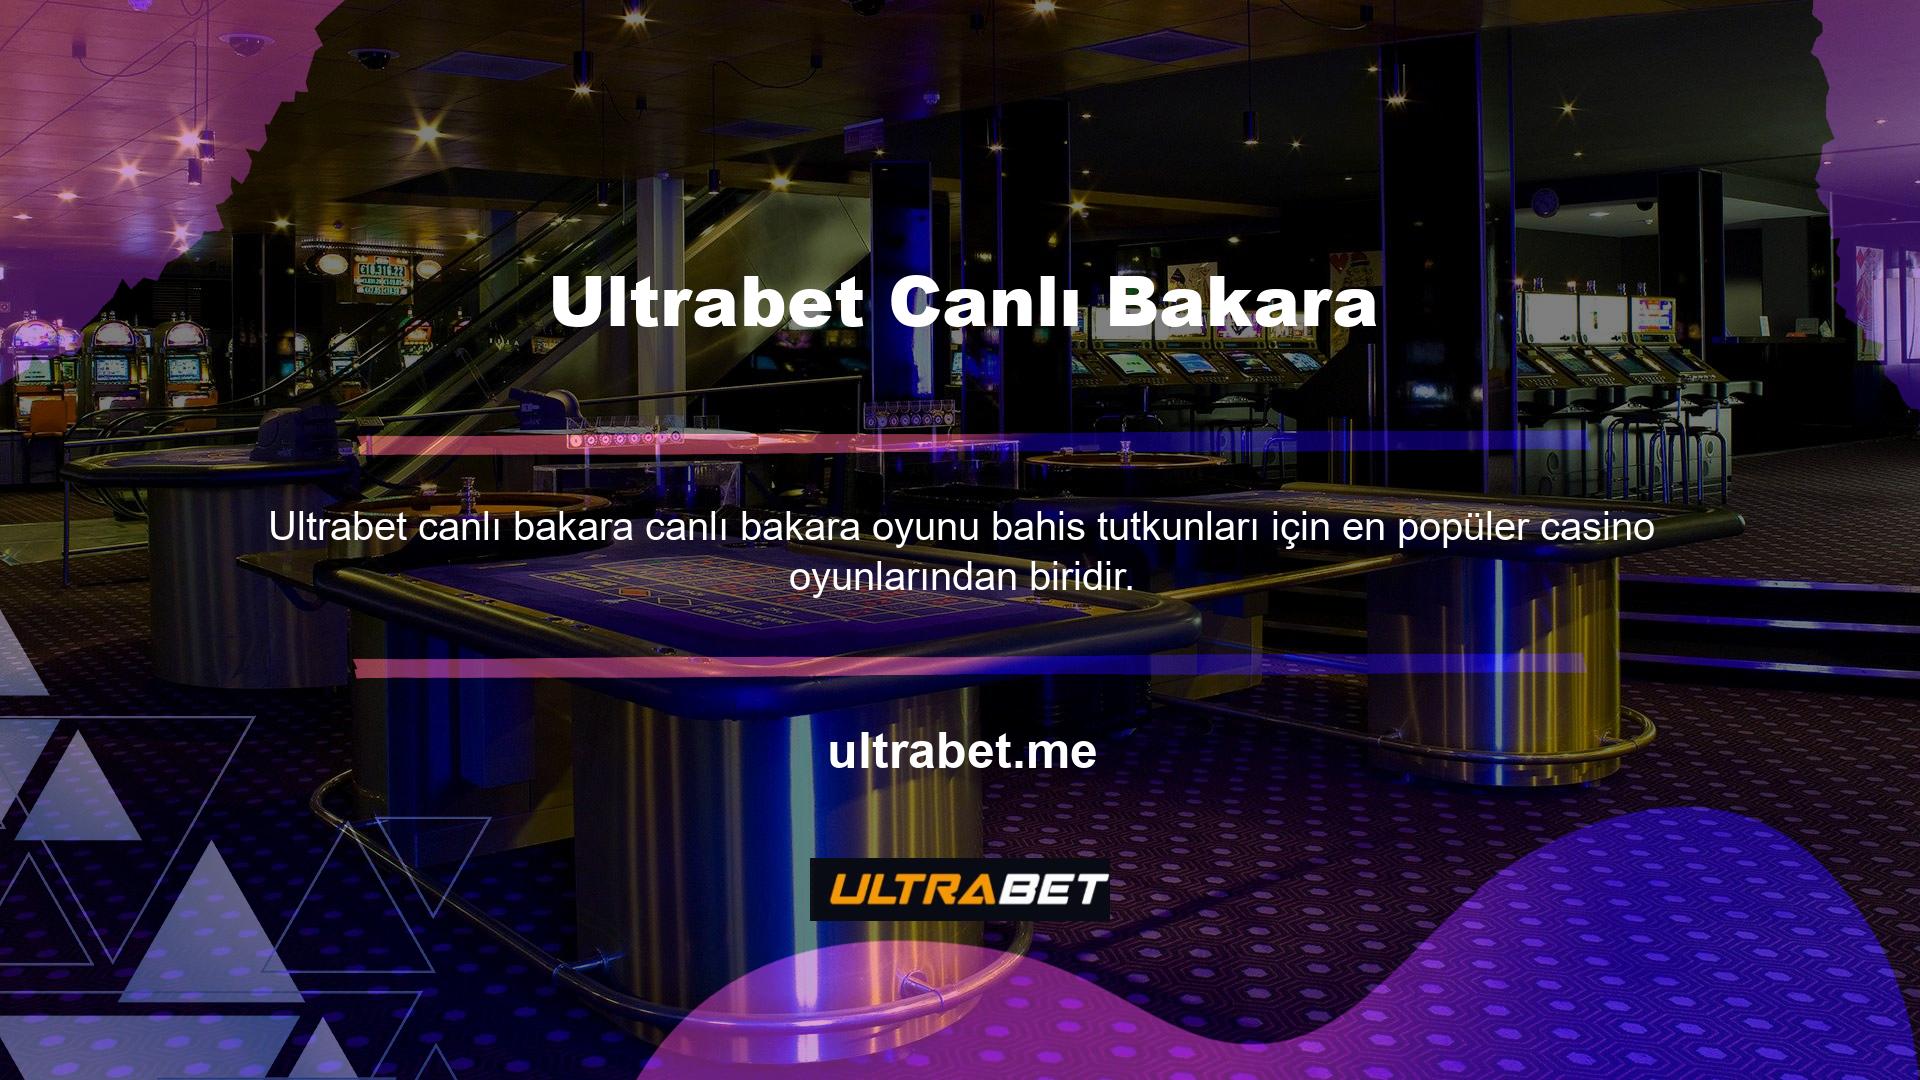 Canlı bakara oyunları Ultrabet web sitesinde Oyun Sağlayıcılar altında yer almaktadır